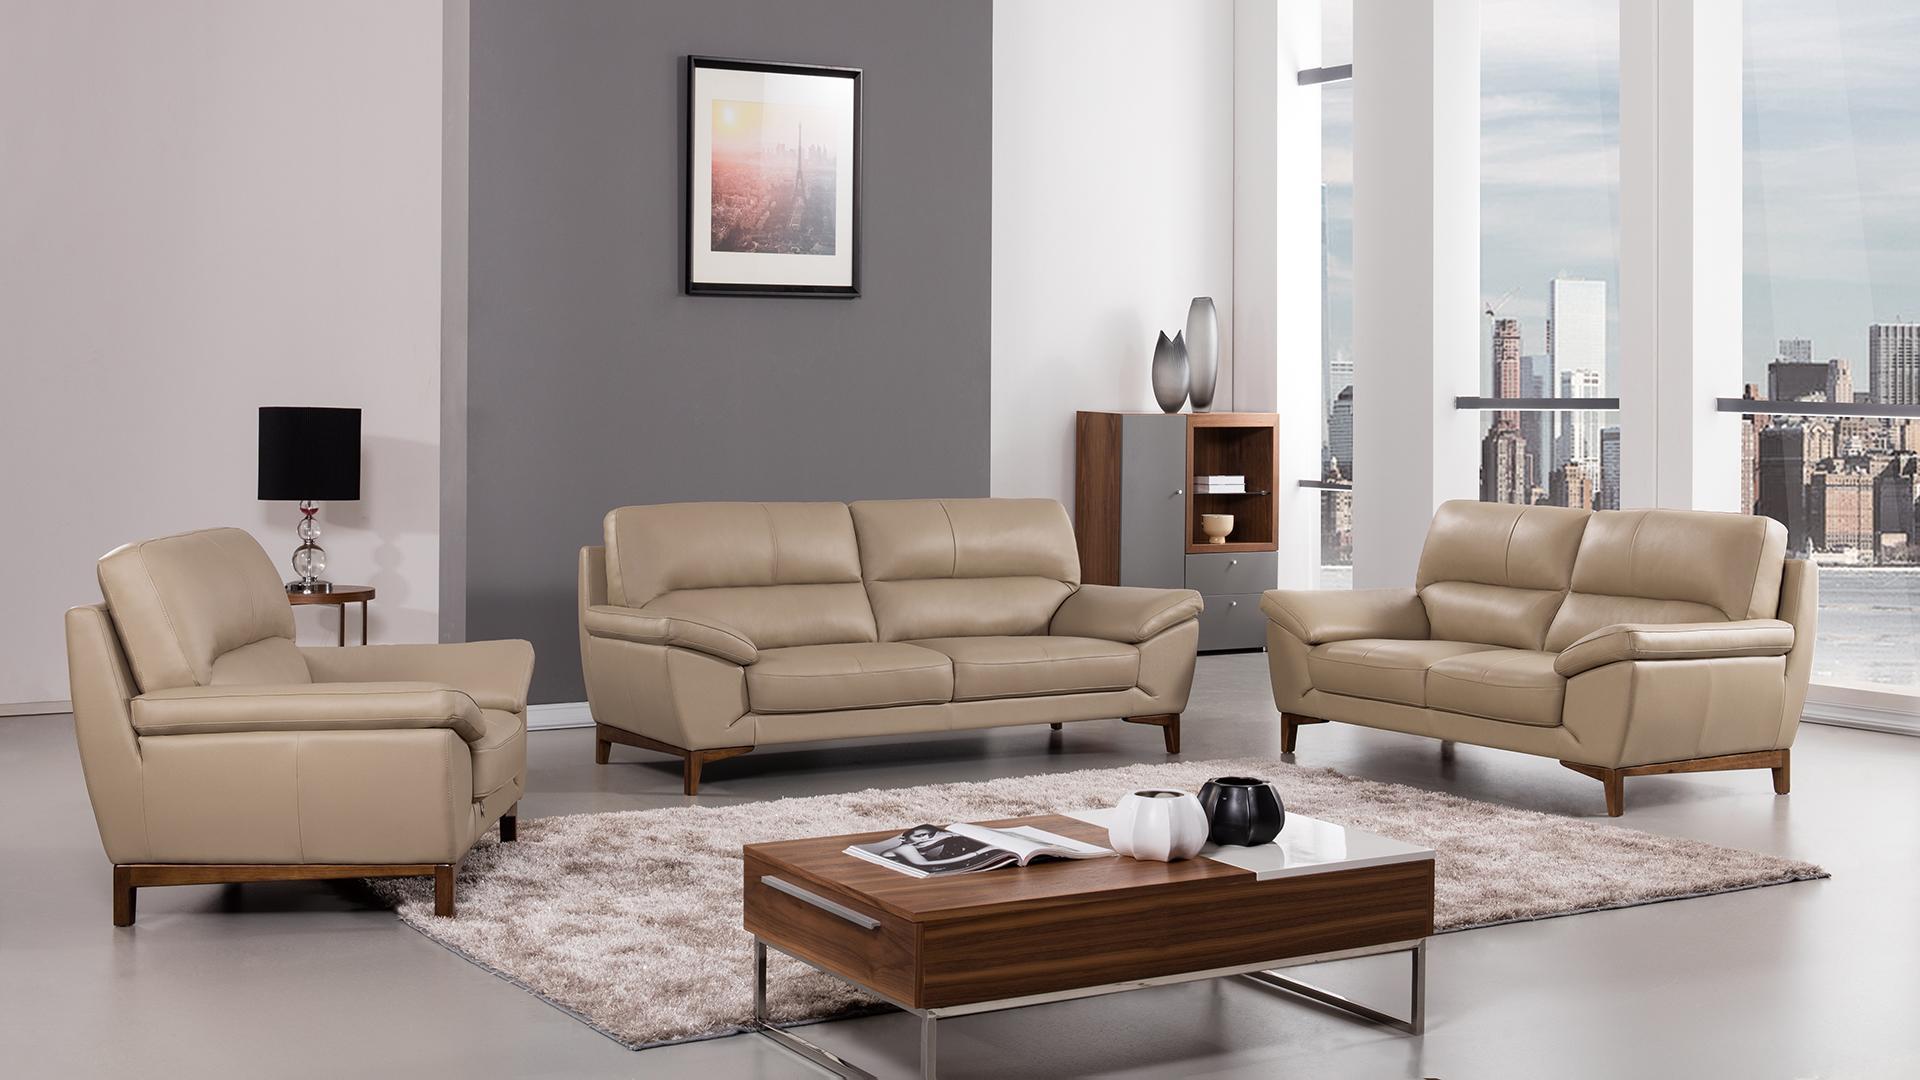 

    
American Eagle Furniture EK080-TAN-SF Sofa Tan EK080-TAN-SF
